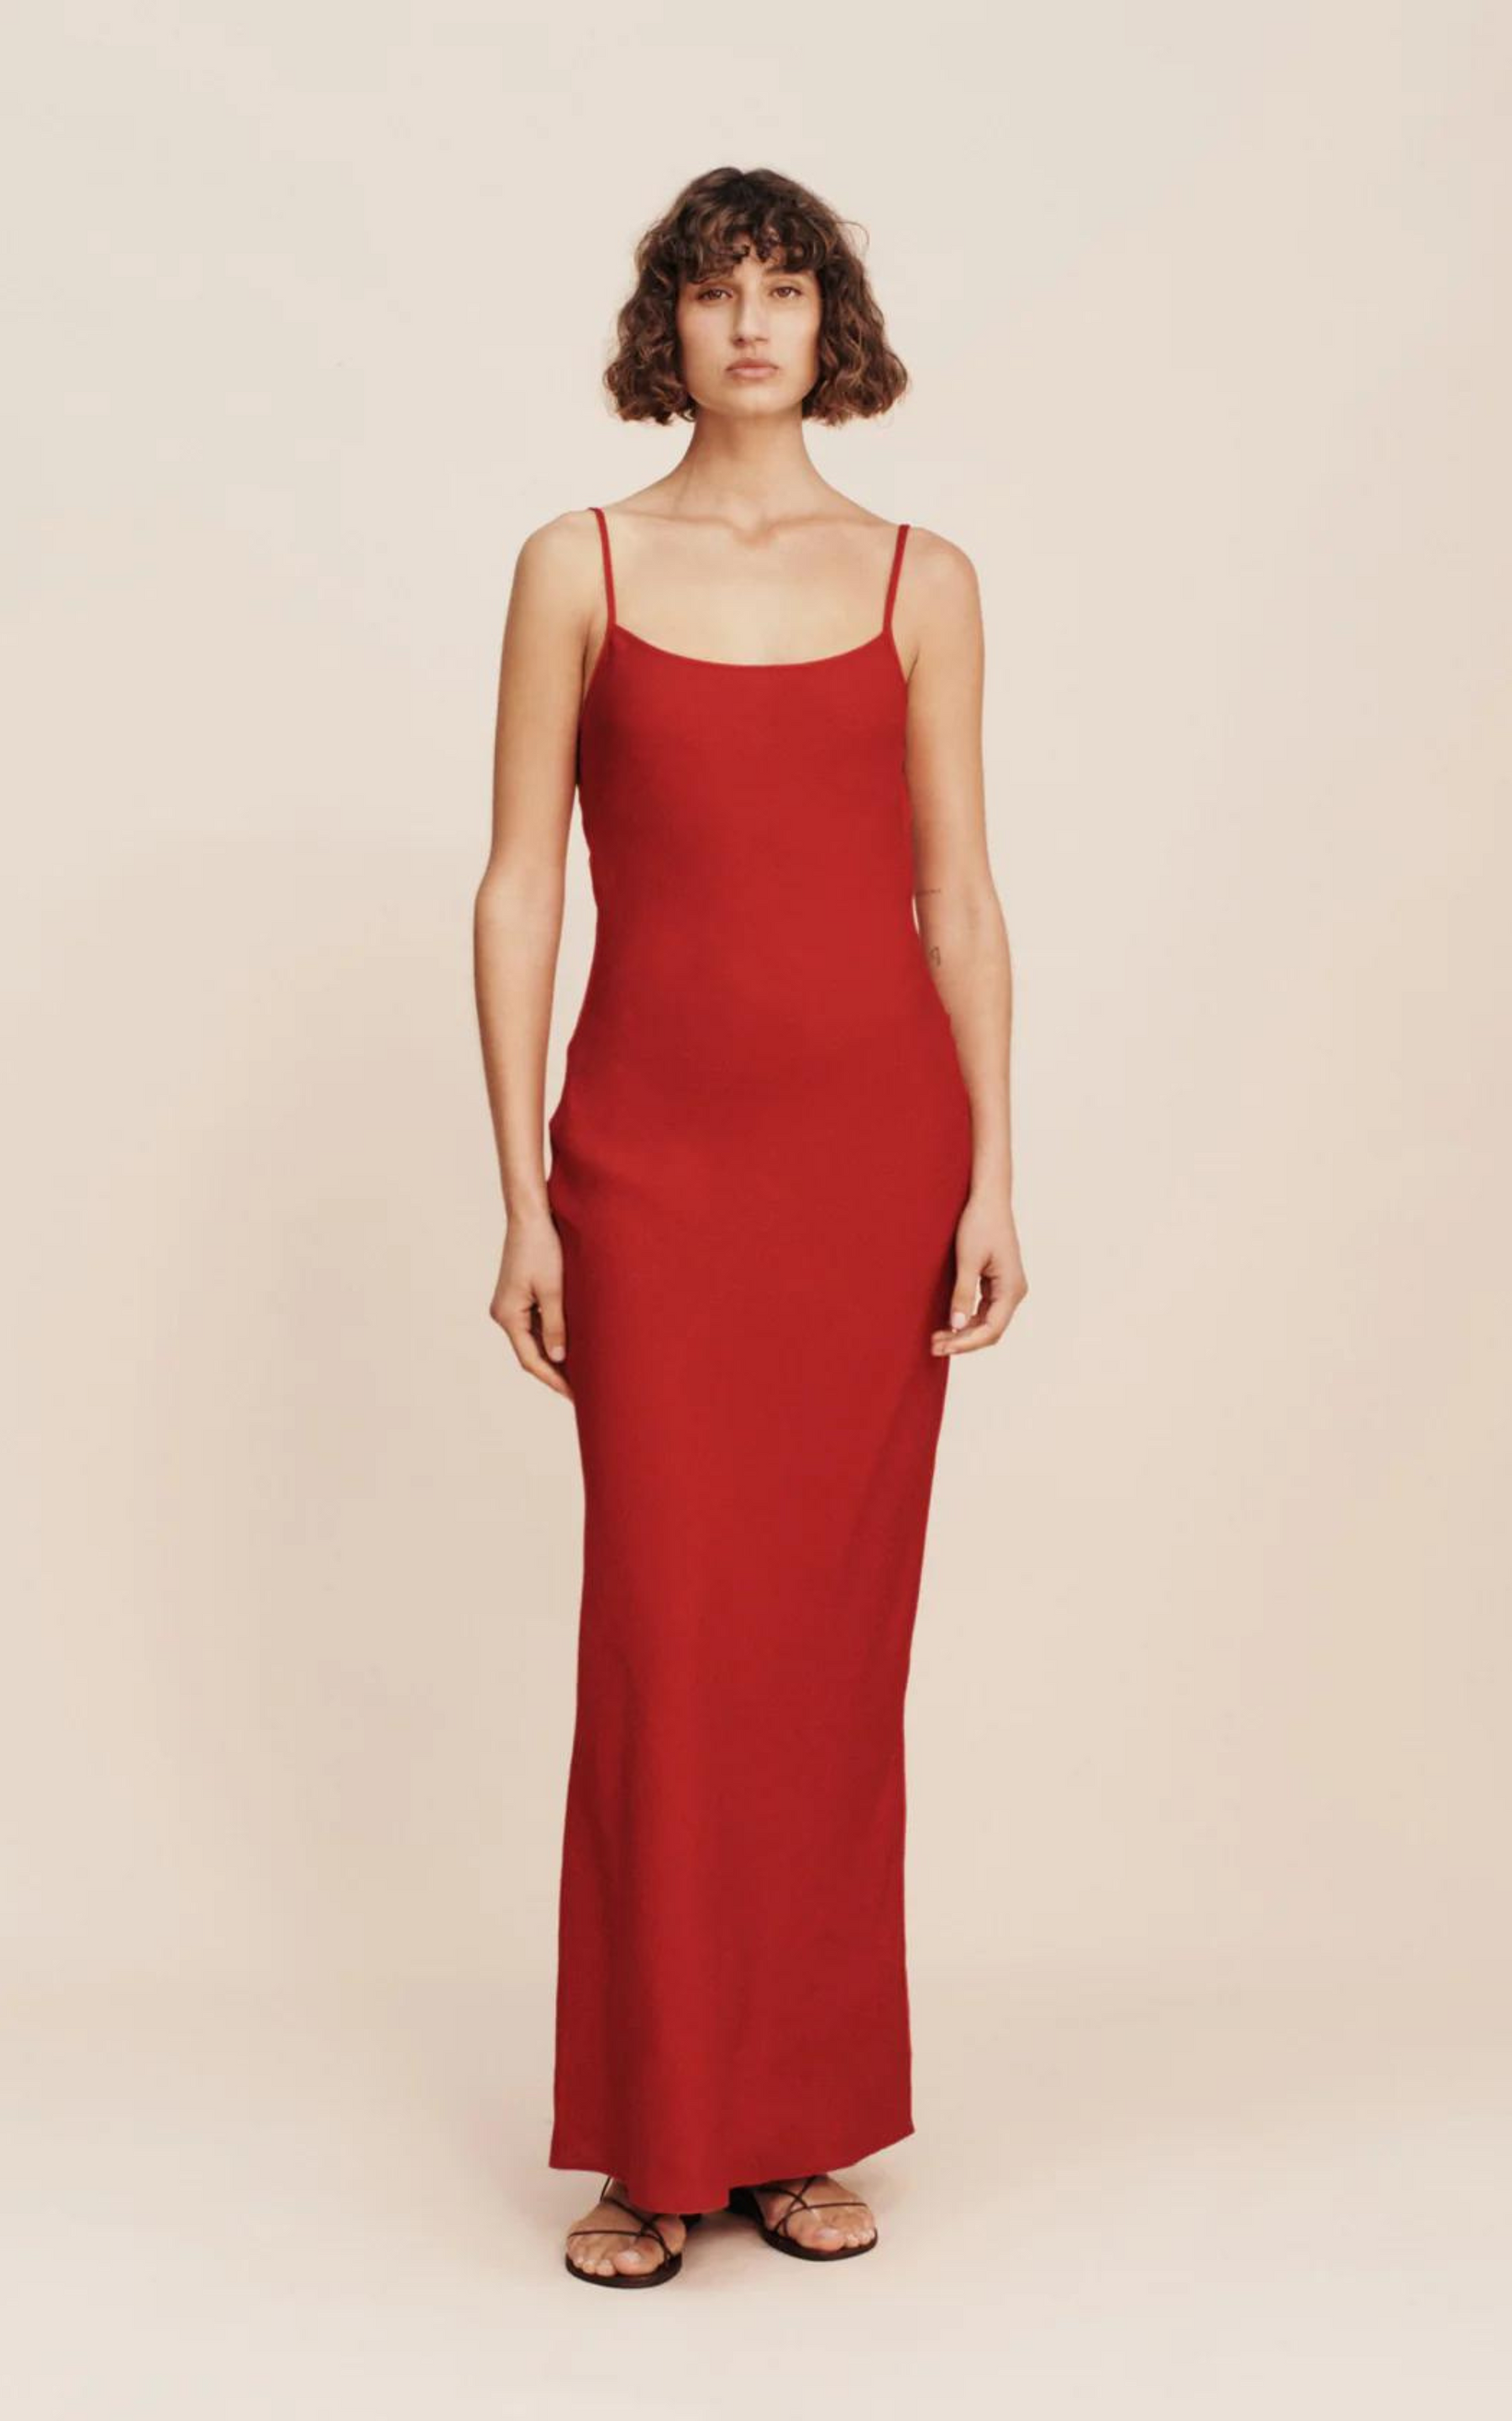 Frances Dress Crimson